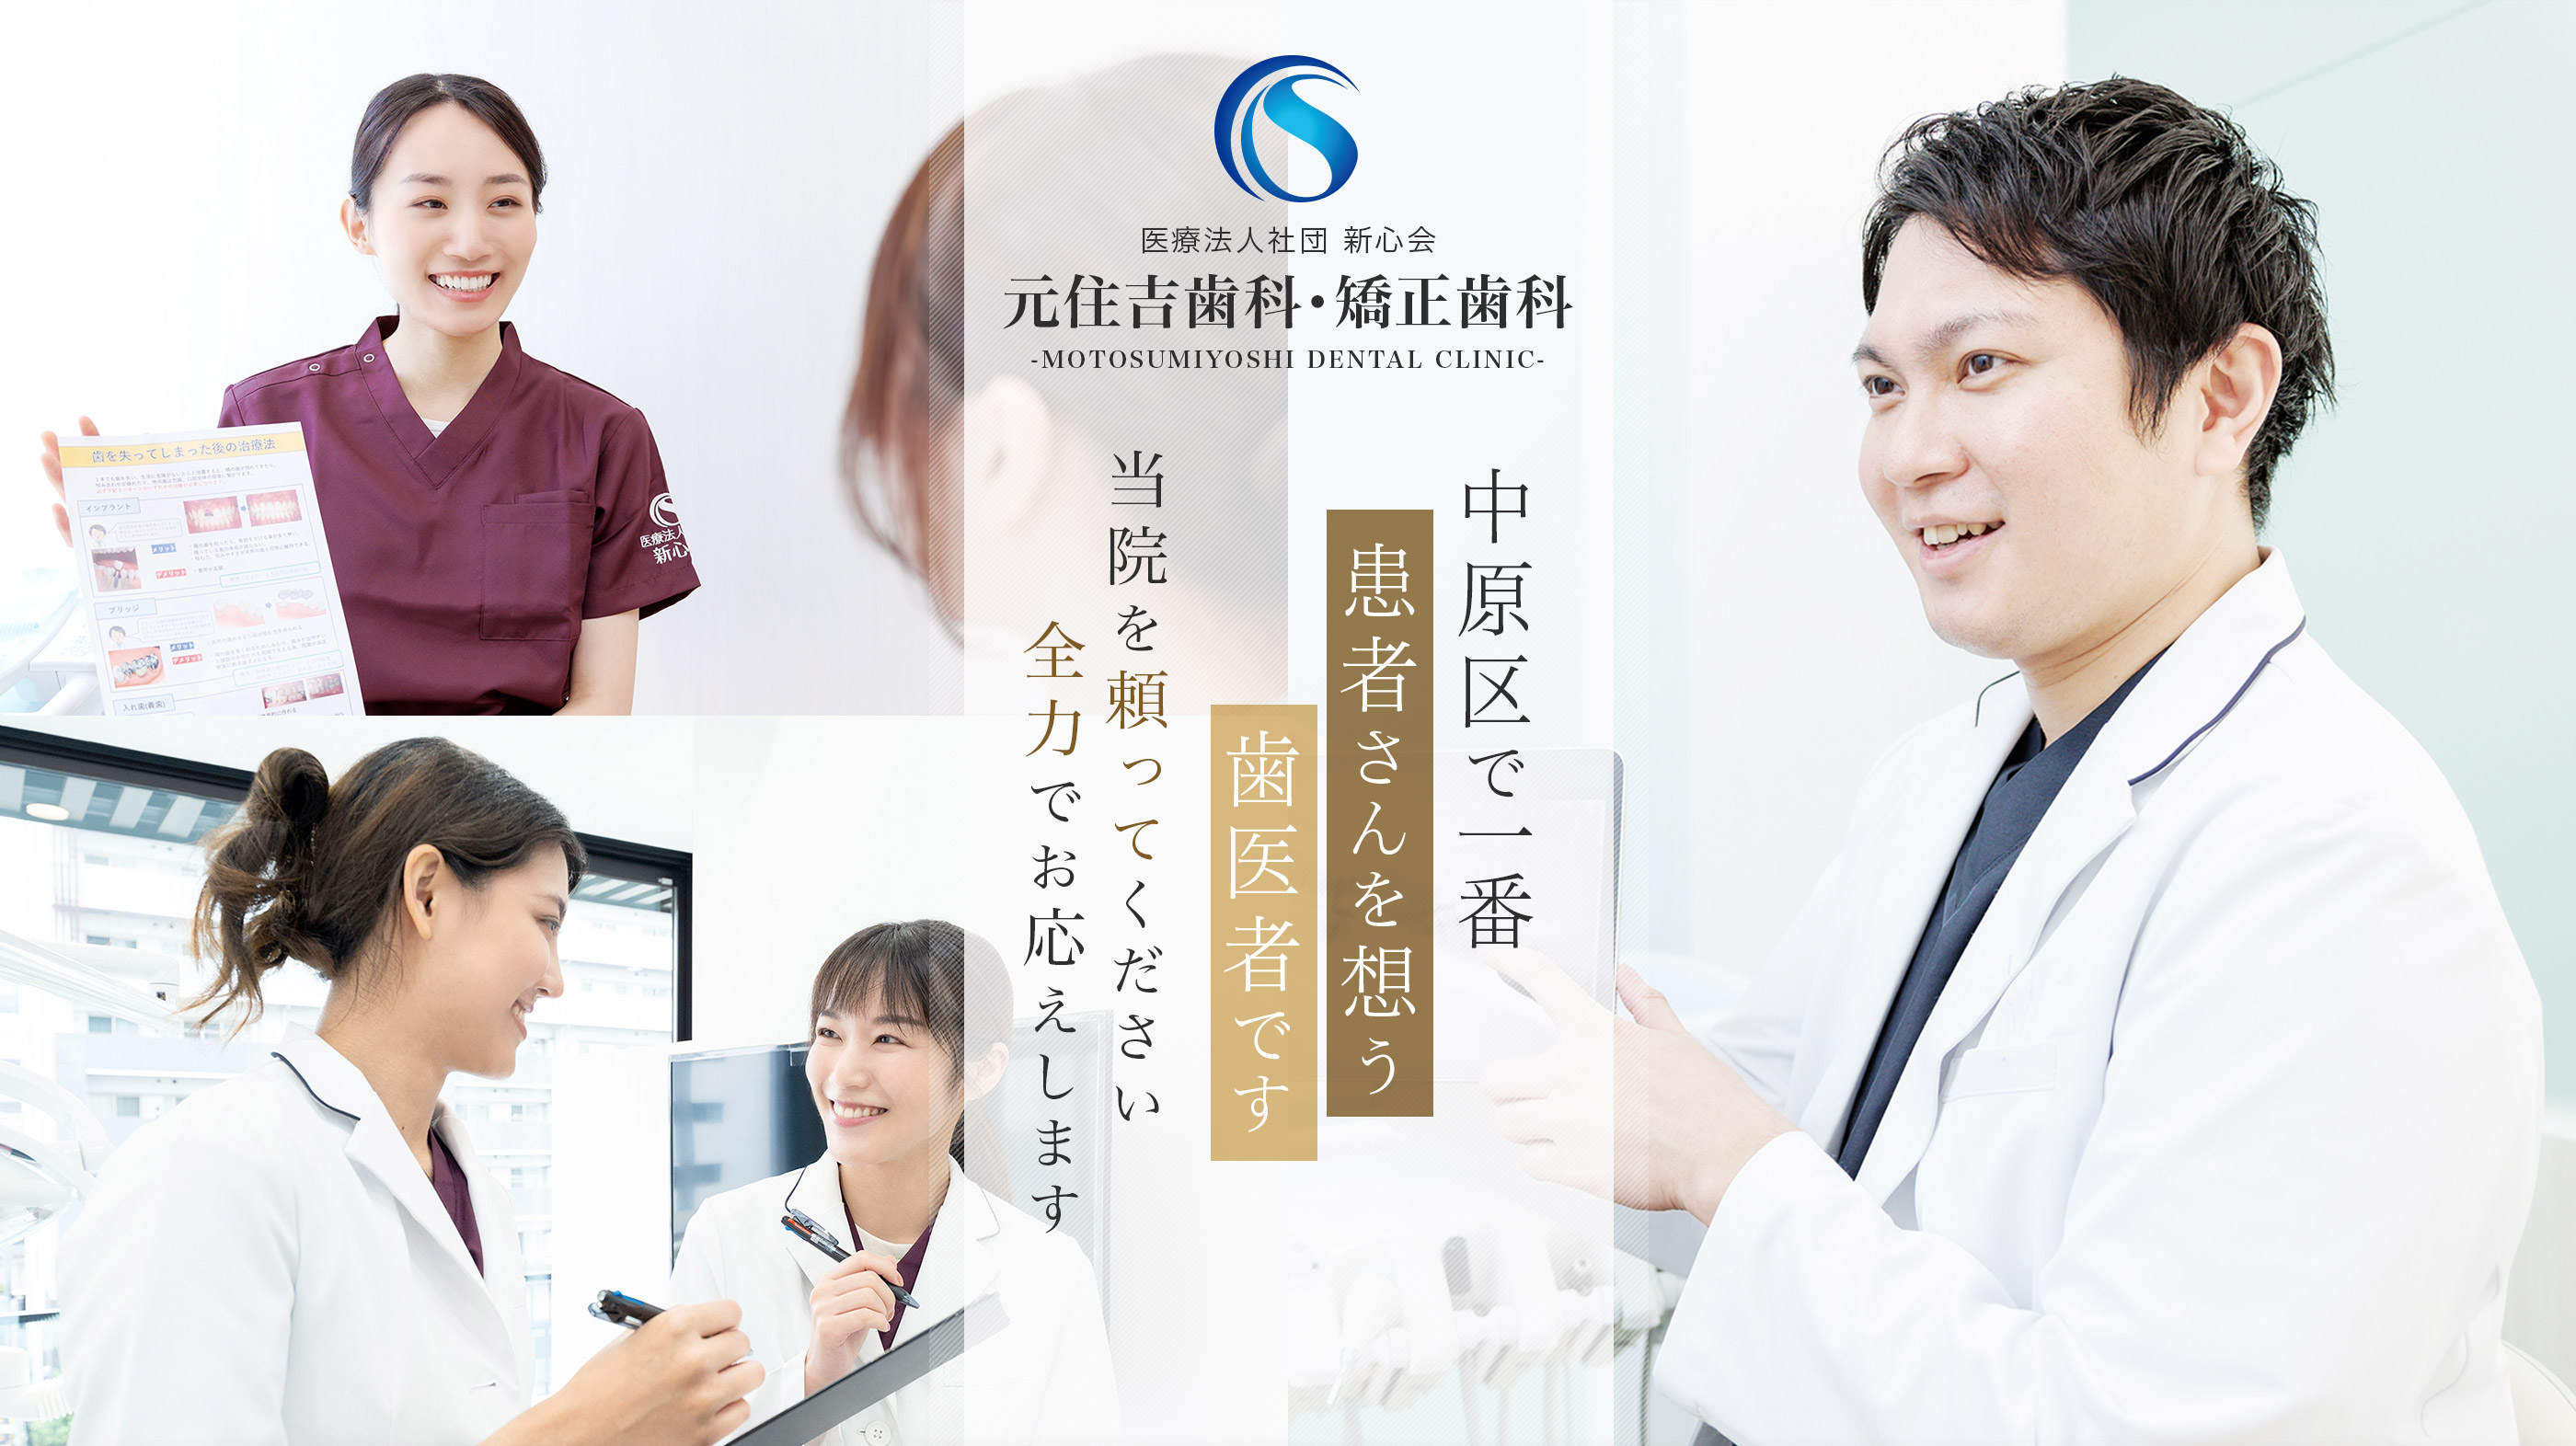 中原区で一番患者さんを想う歯医者です。MOTOSUMIYOSHI DENTAL CLINIC